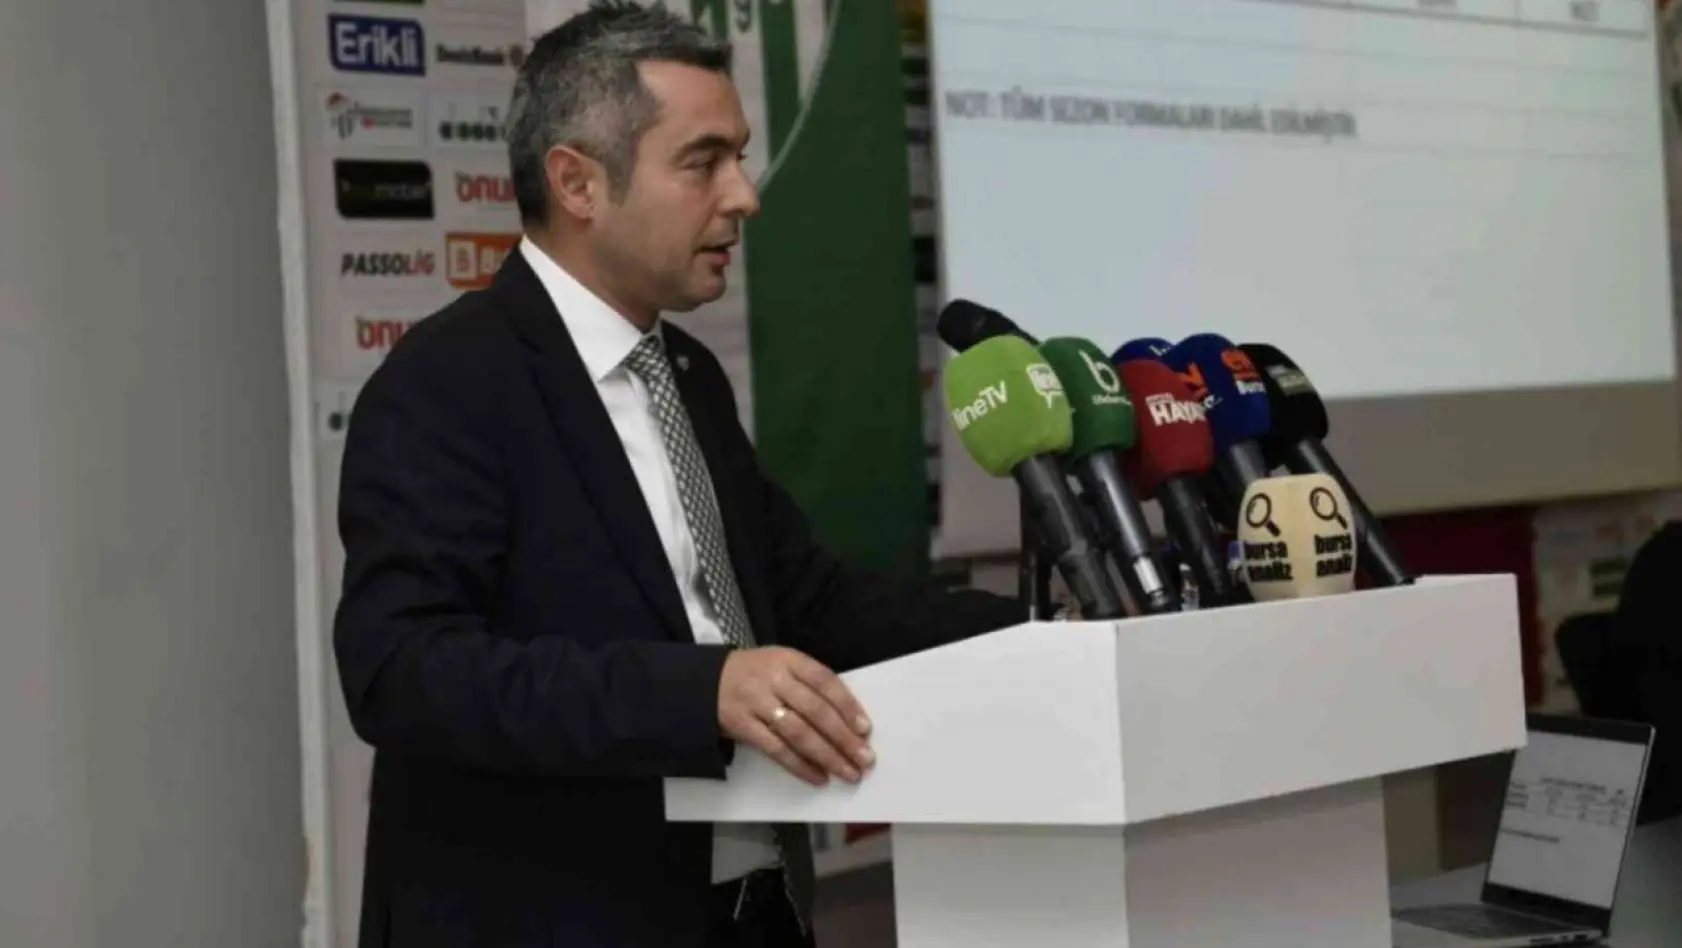 Bursaspor'un borcu 1 milyar 58 milyon TL borcu olduğu açıklandı